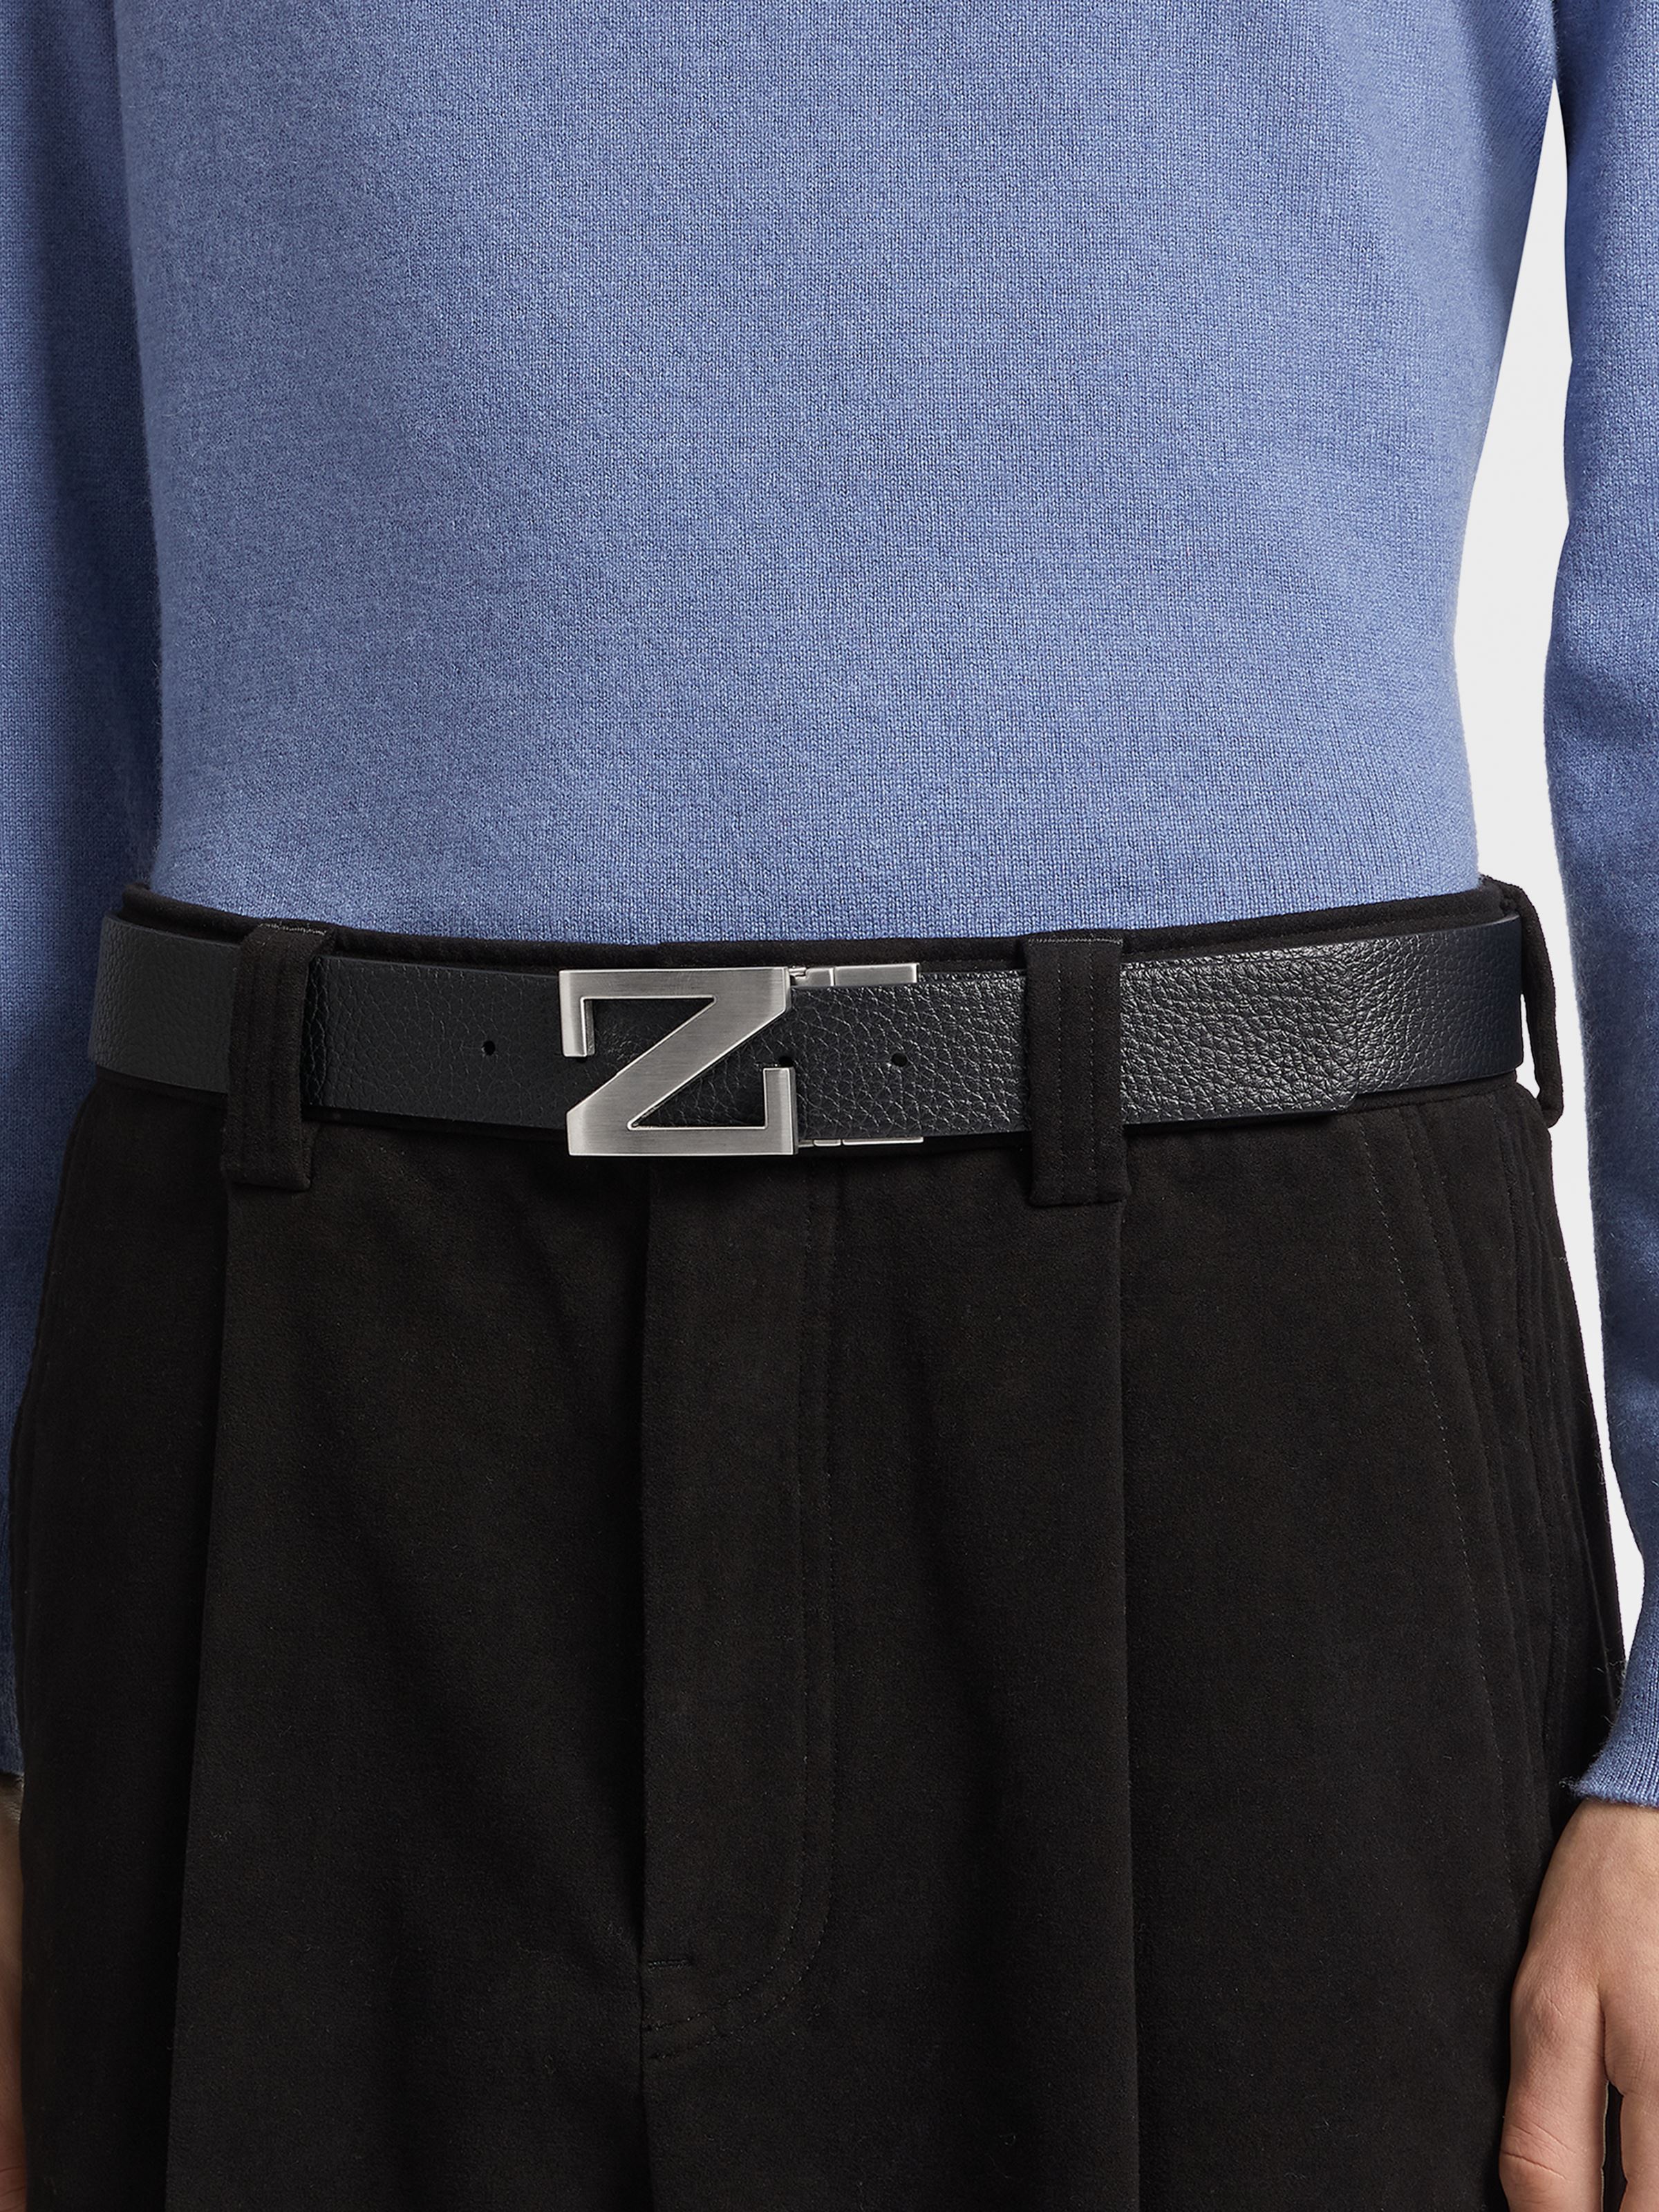 Designer leather belts for men | ZEGNA